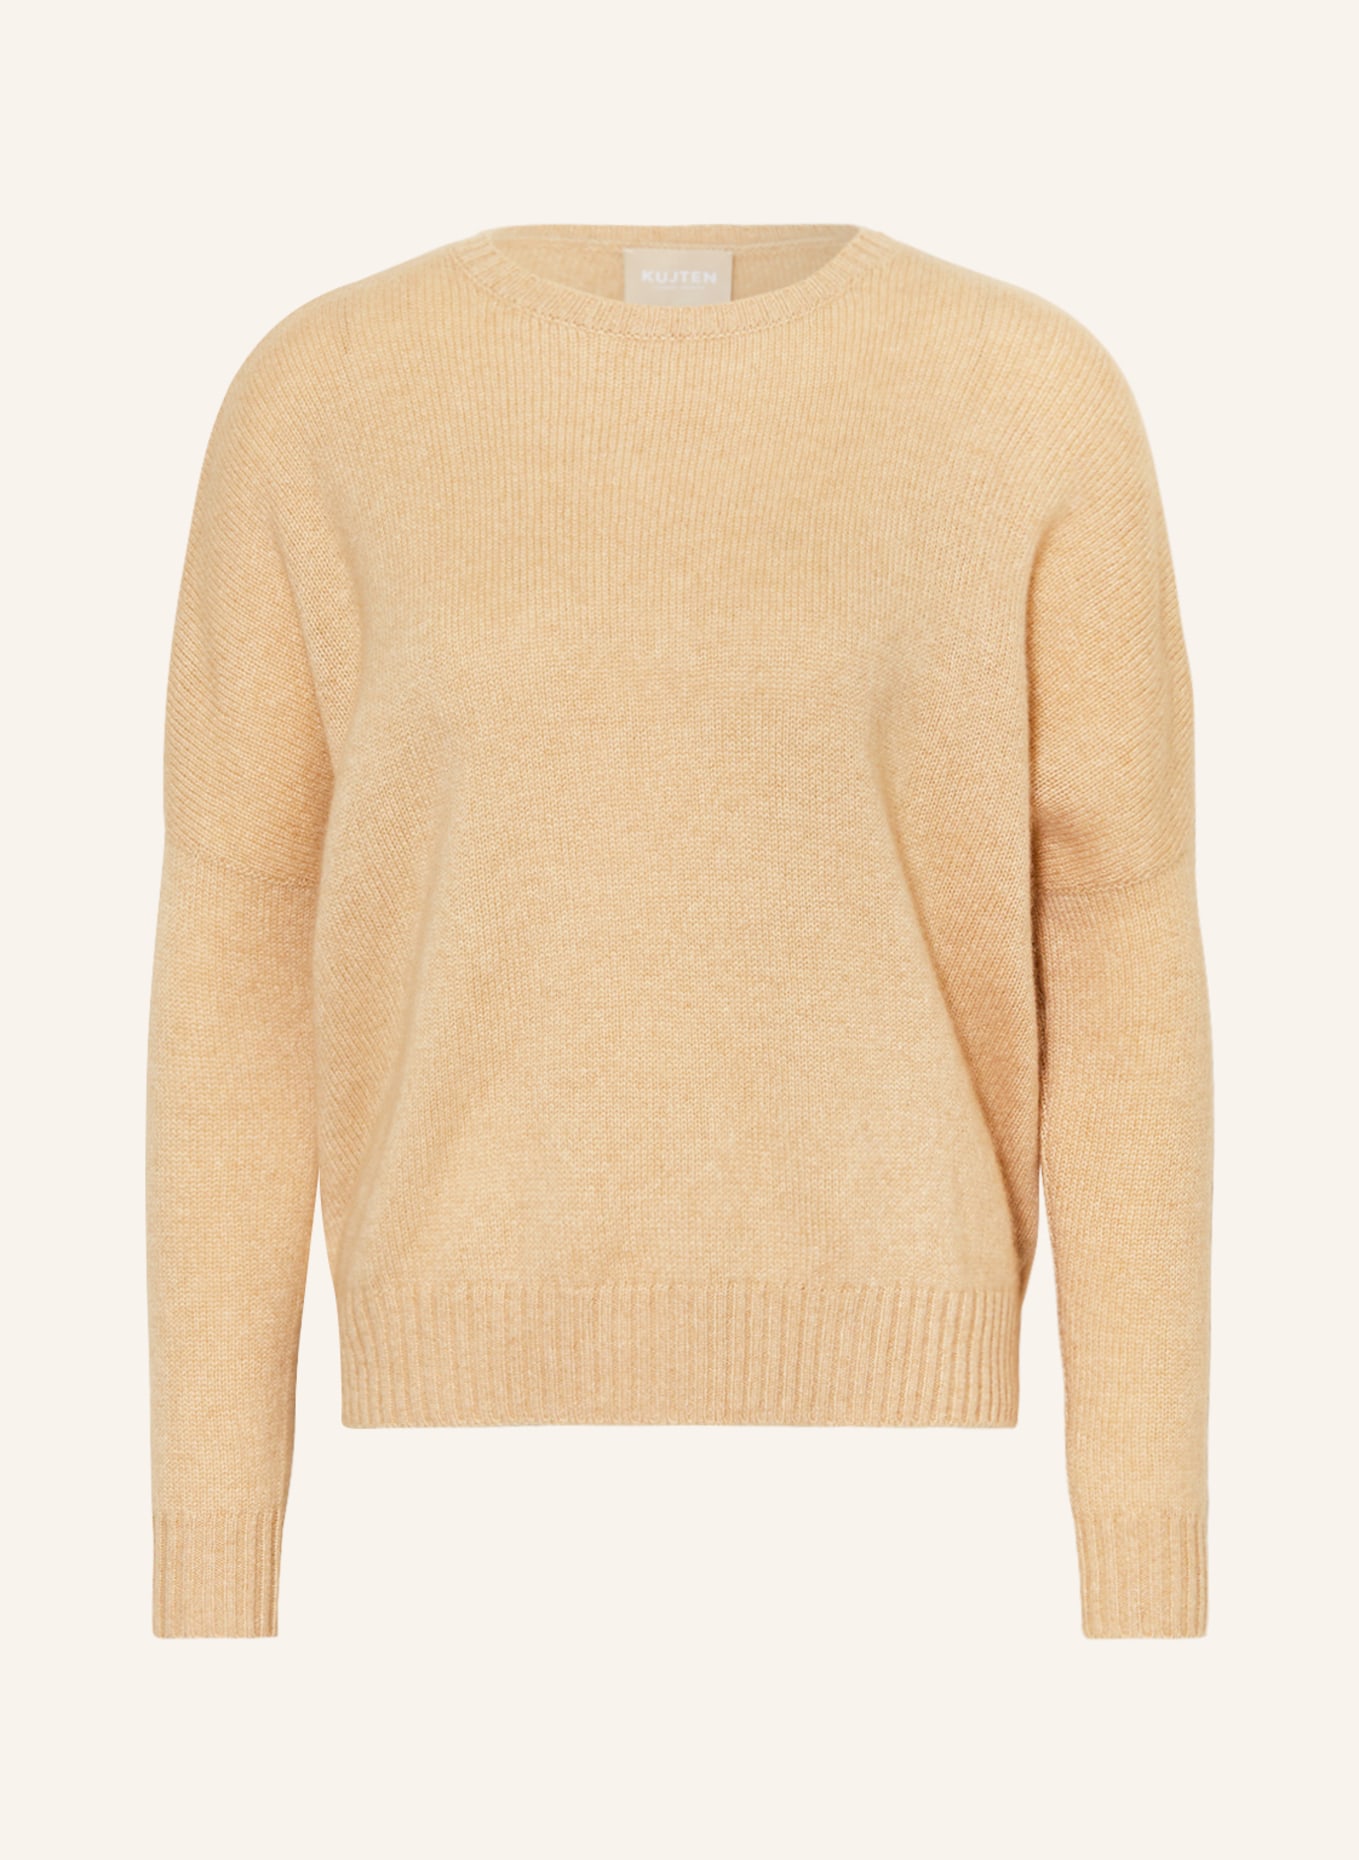 KUJTEN Cashmere sweater AMELIE, Color: BEIGE (Image 1)